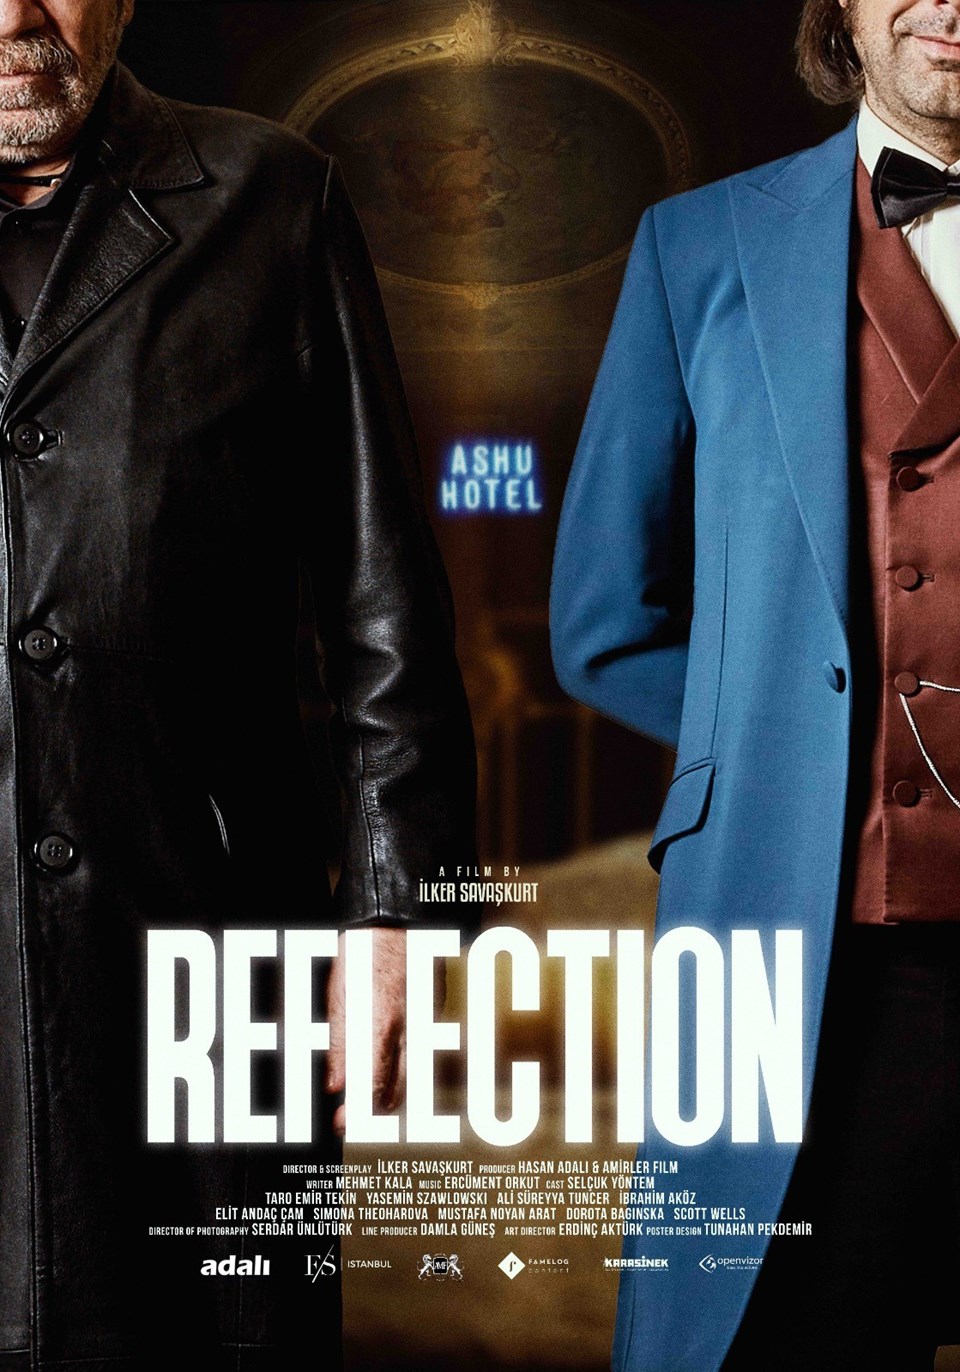 Reflection filmi ilk kez Altın Koza’da gösterilecek - 1